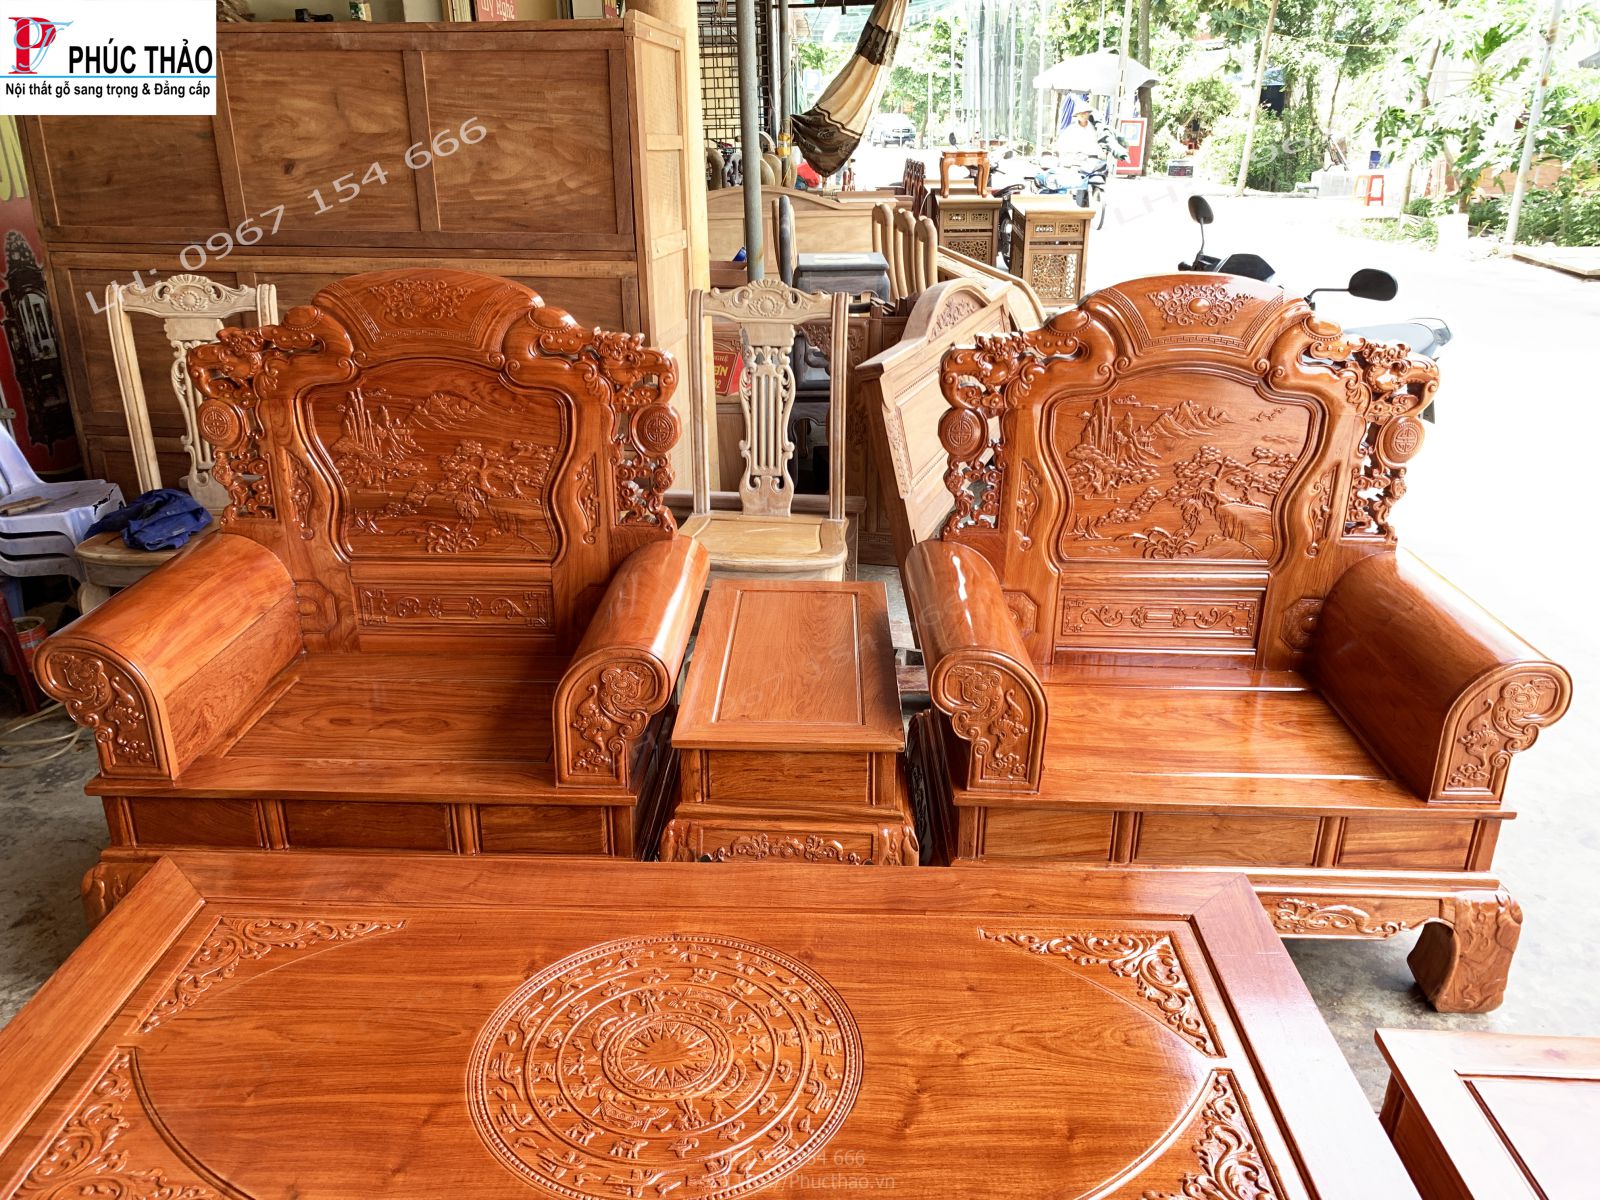 Hình ảnh chi tiết bộ bàn ghế khổng minh gỗ hương